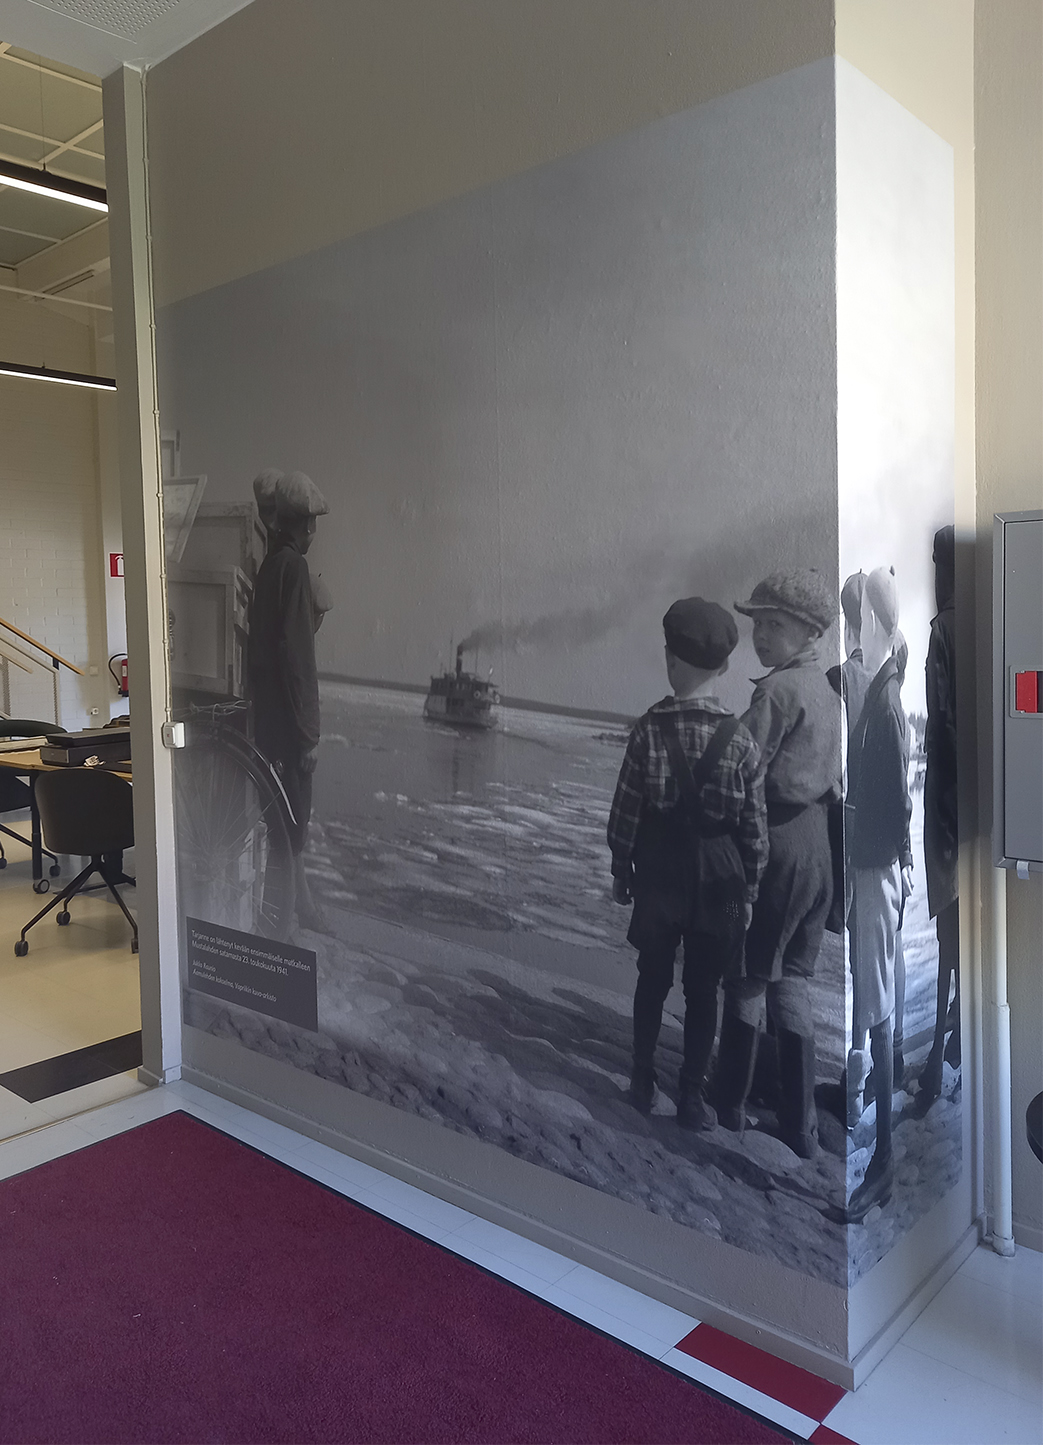 Esimerkkikuva kuvasuurennoksesta. Kuva-arkiston käytävän seinälle on laitettu tuloste lapsista ja Tarjanne -höyrylaivasta